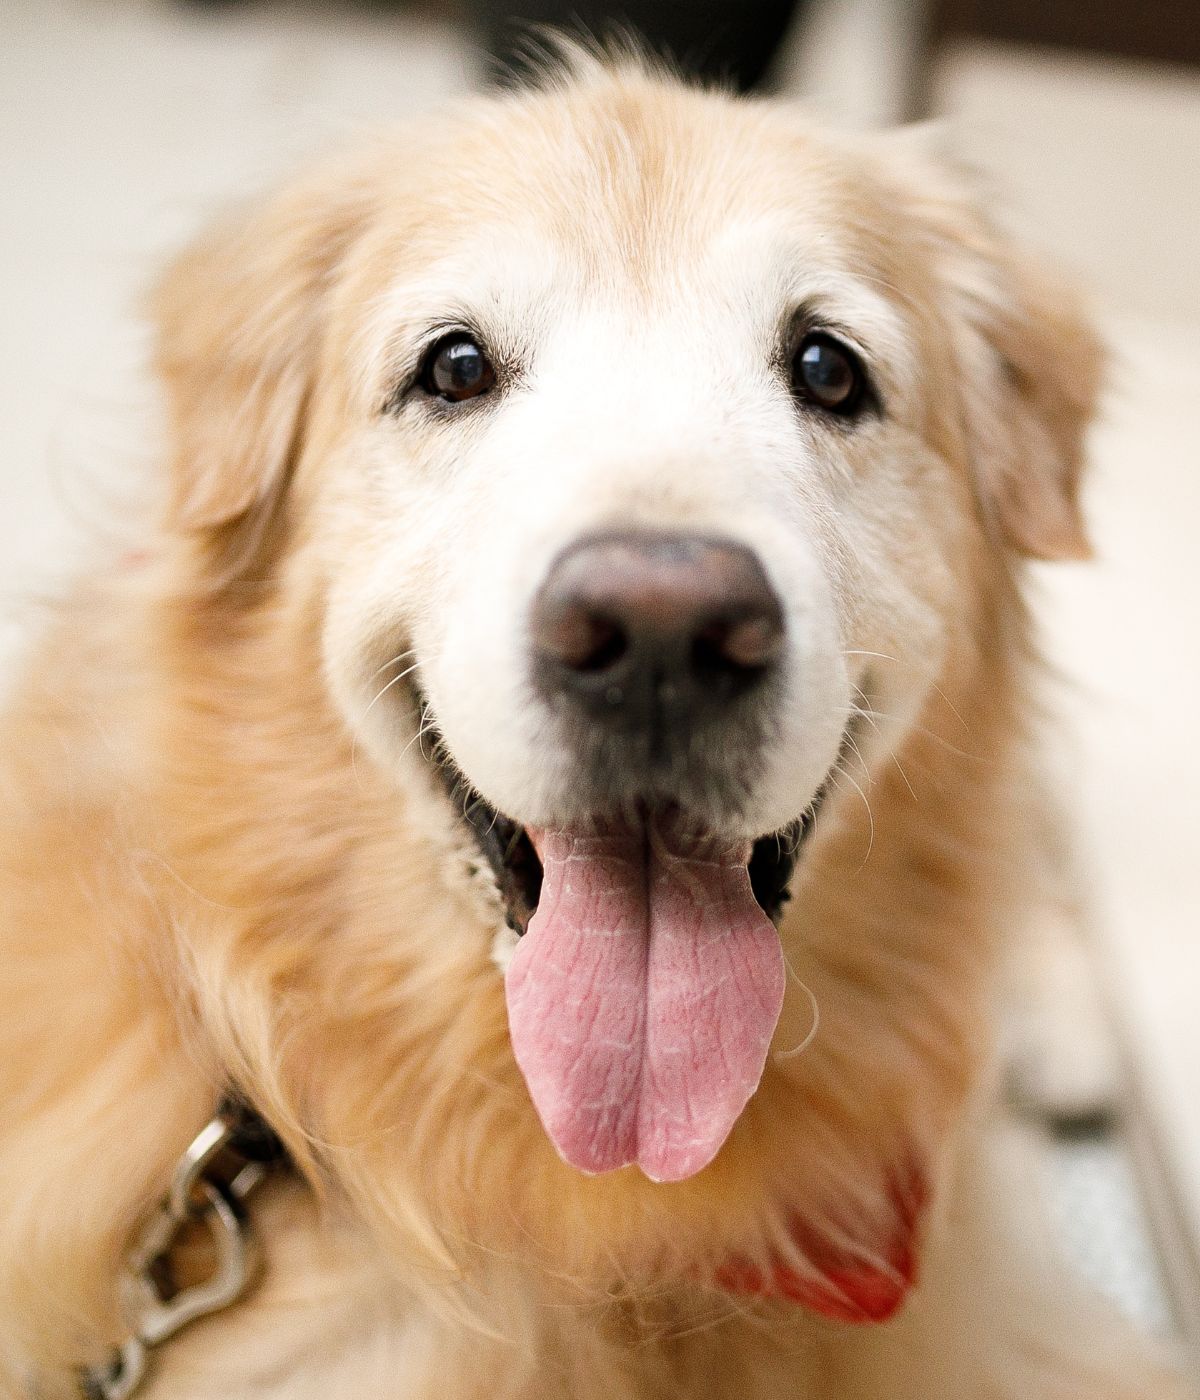 a golden retriever dog with a big smile